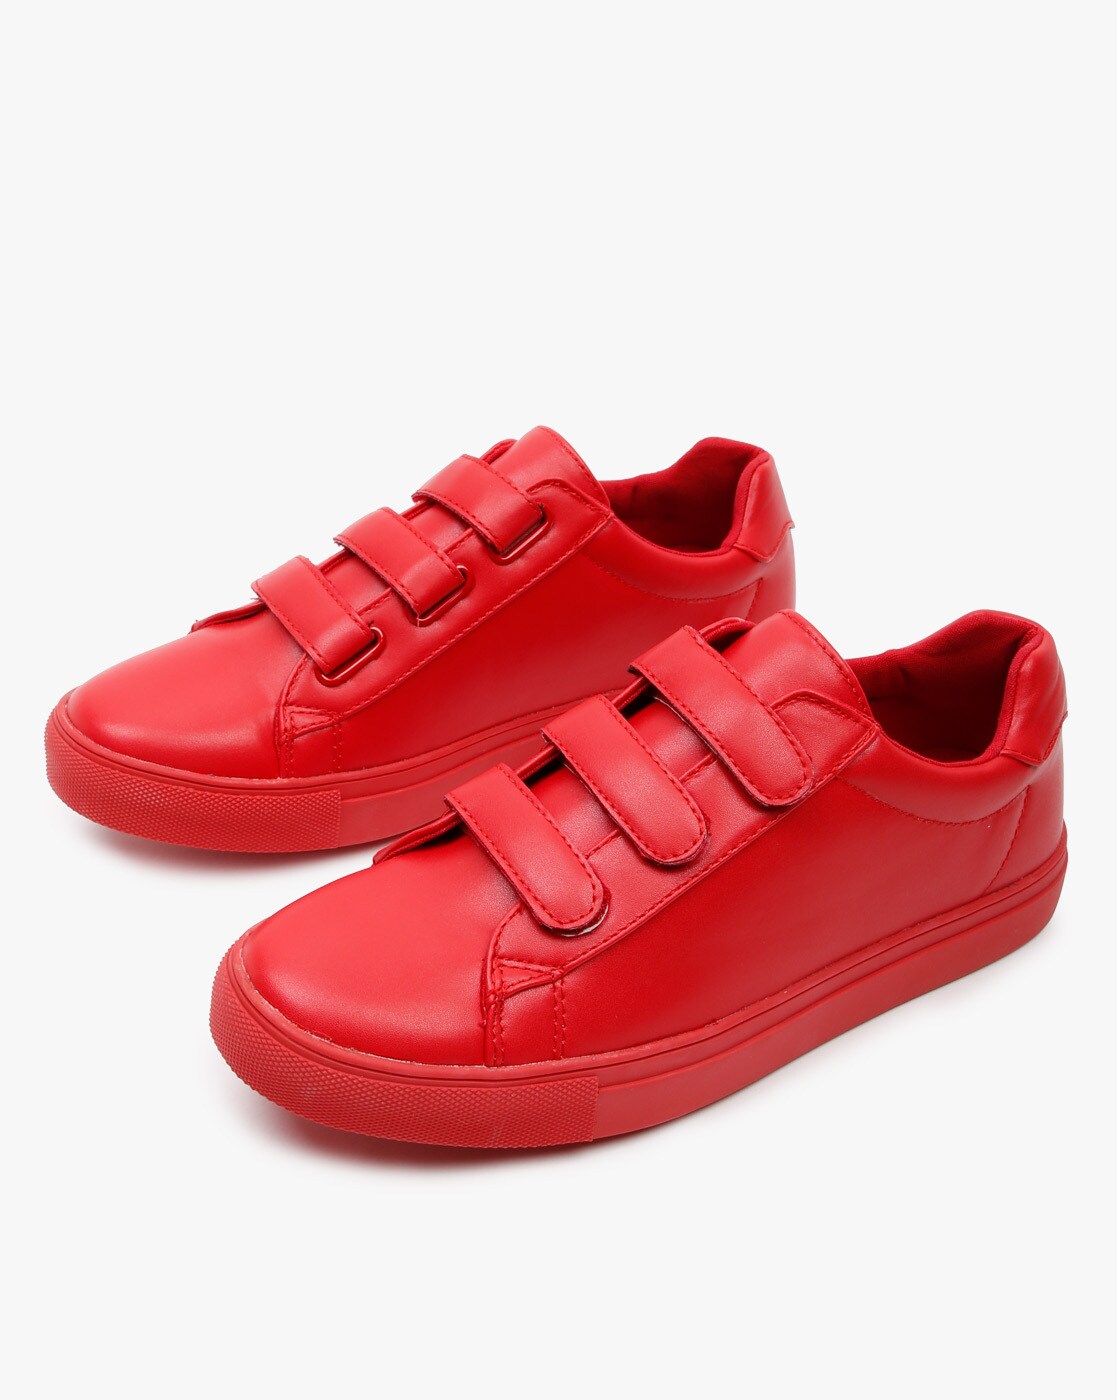 Zara Man EU 44 US 11 Red Velvet Sneaker Boots High Top were | eBay